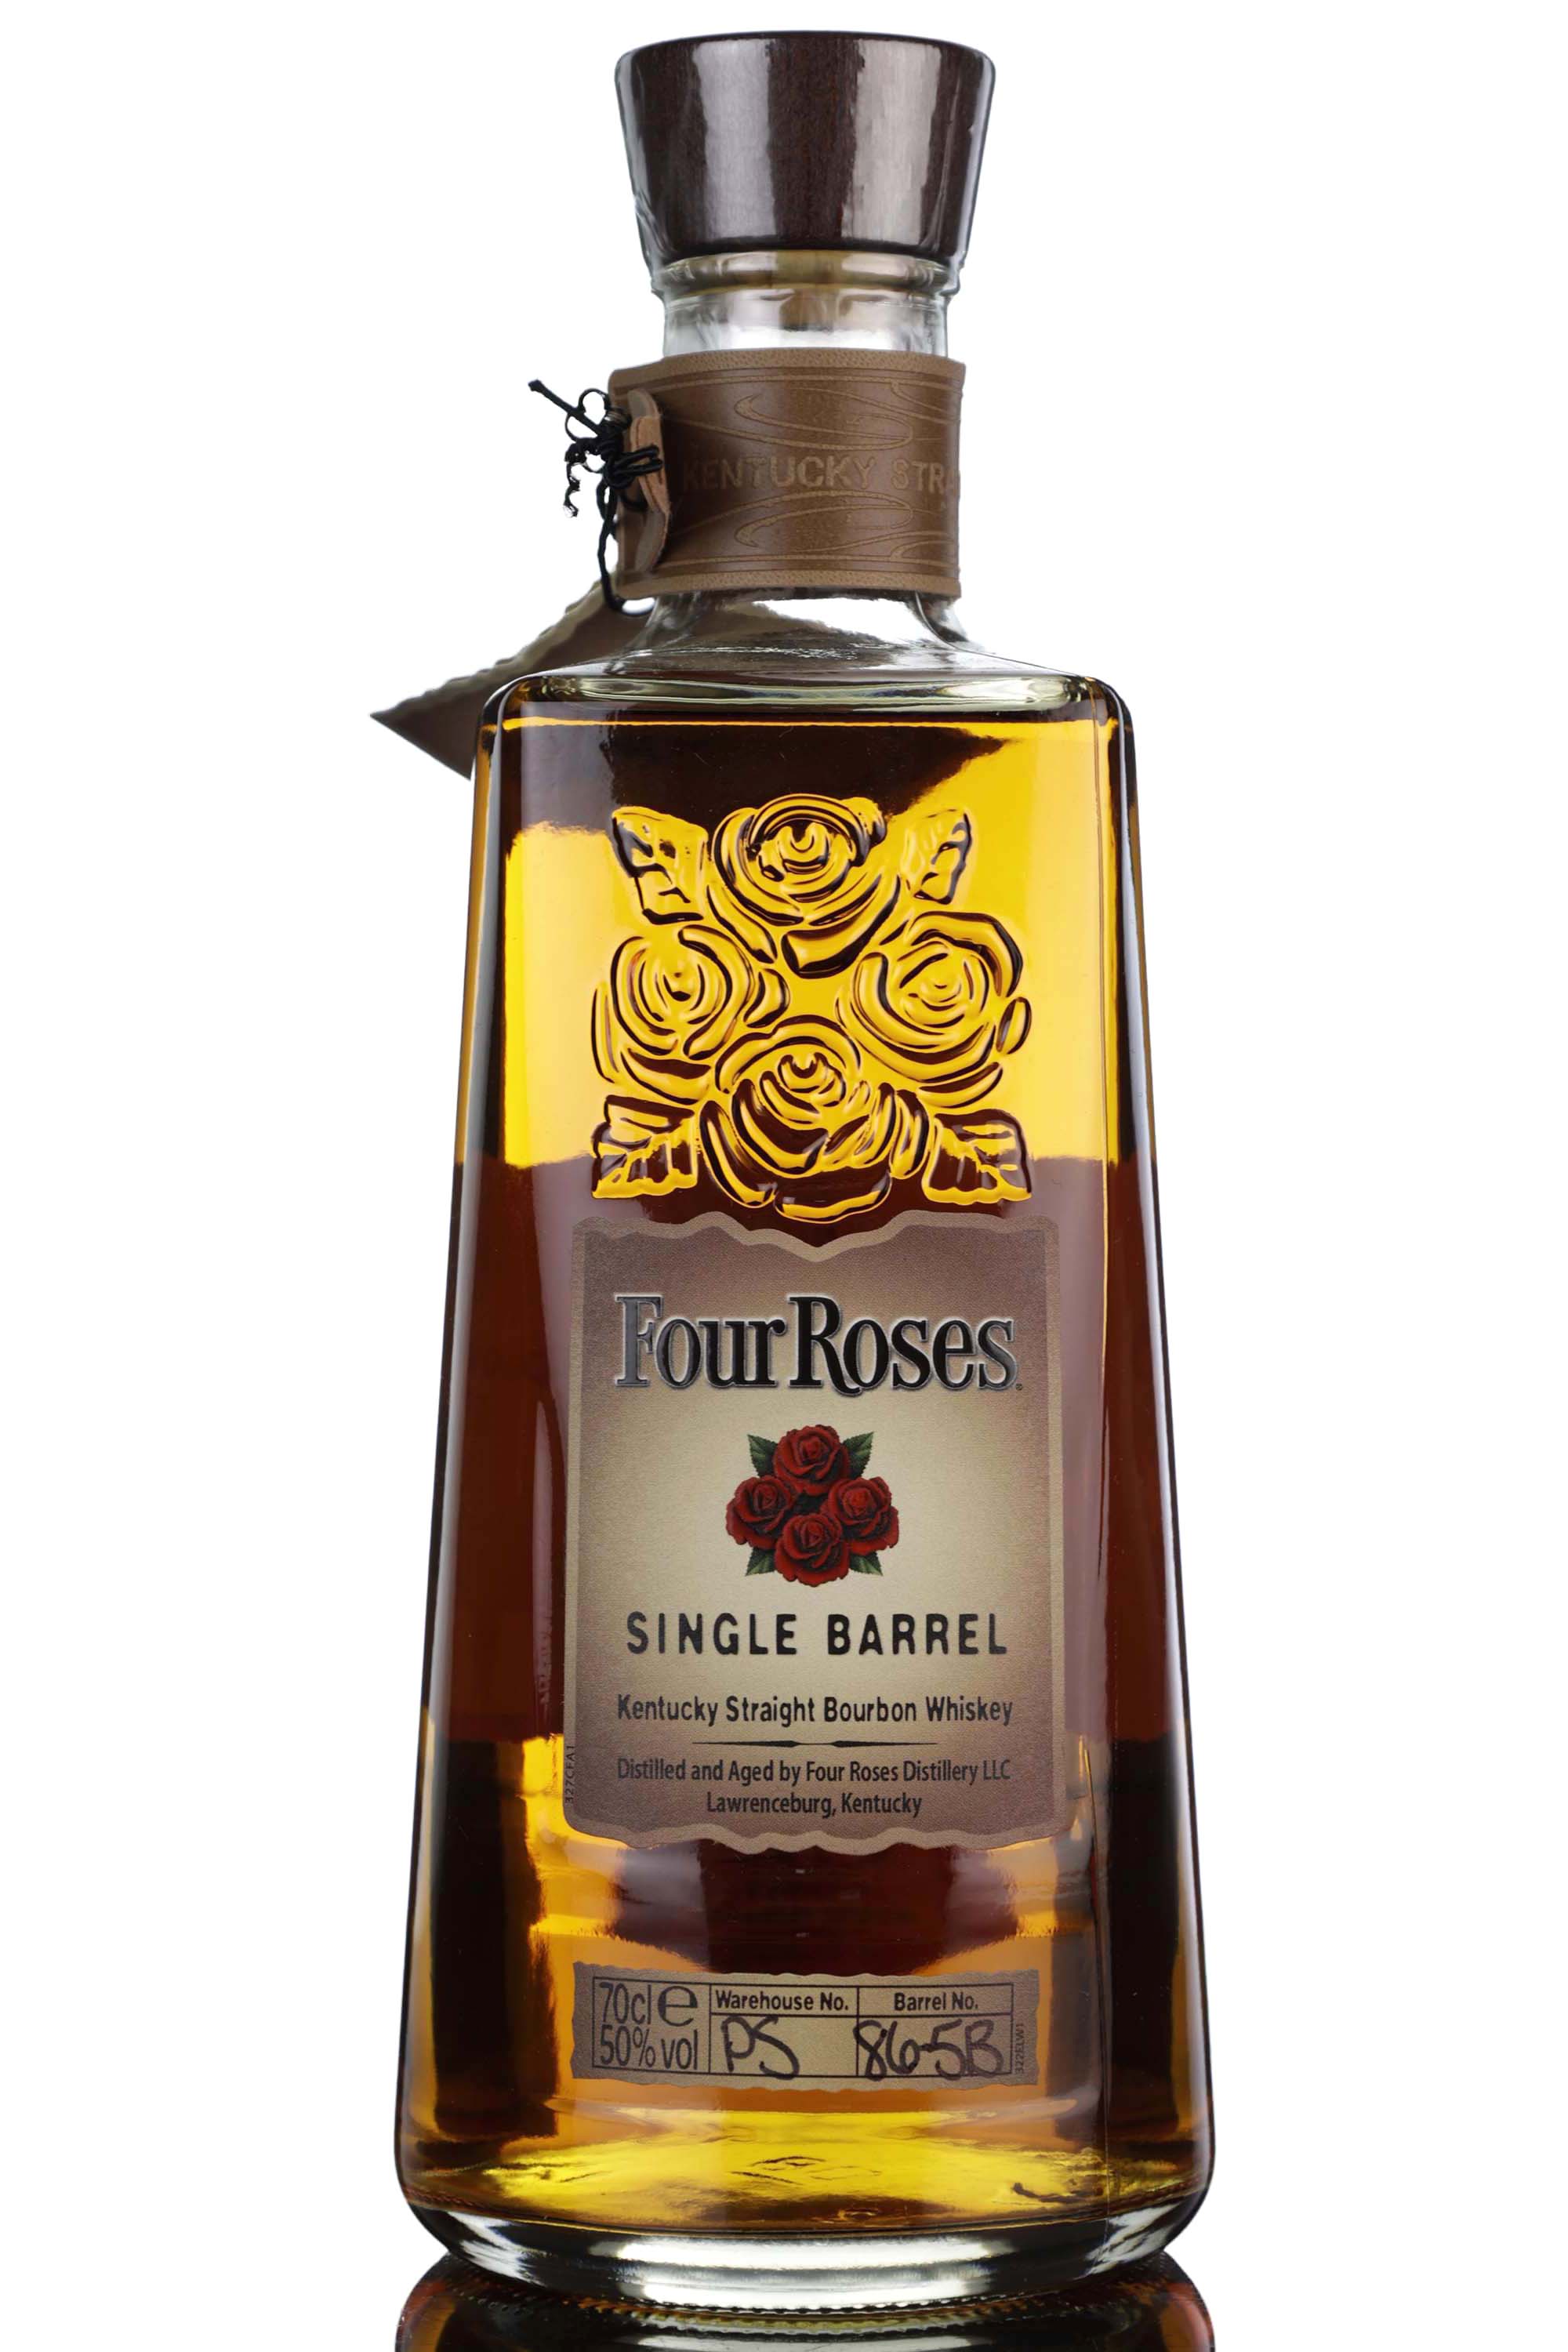 Four Roses Bourbon - Single Barrel 86-5B